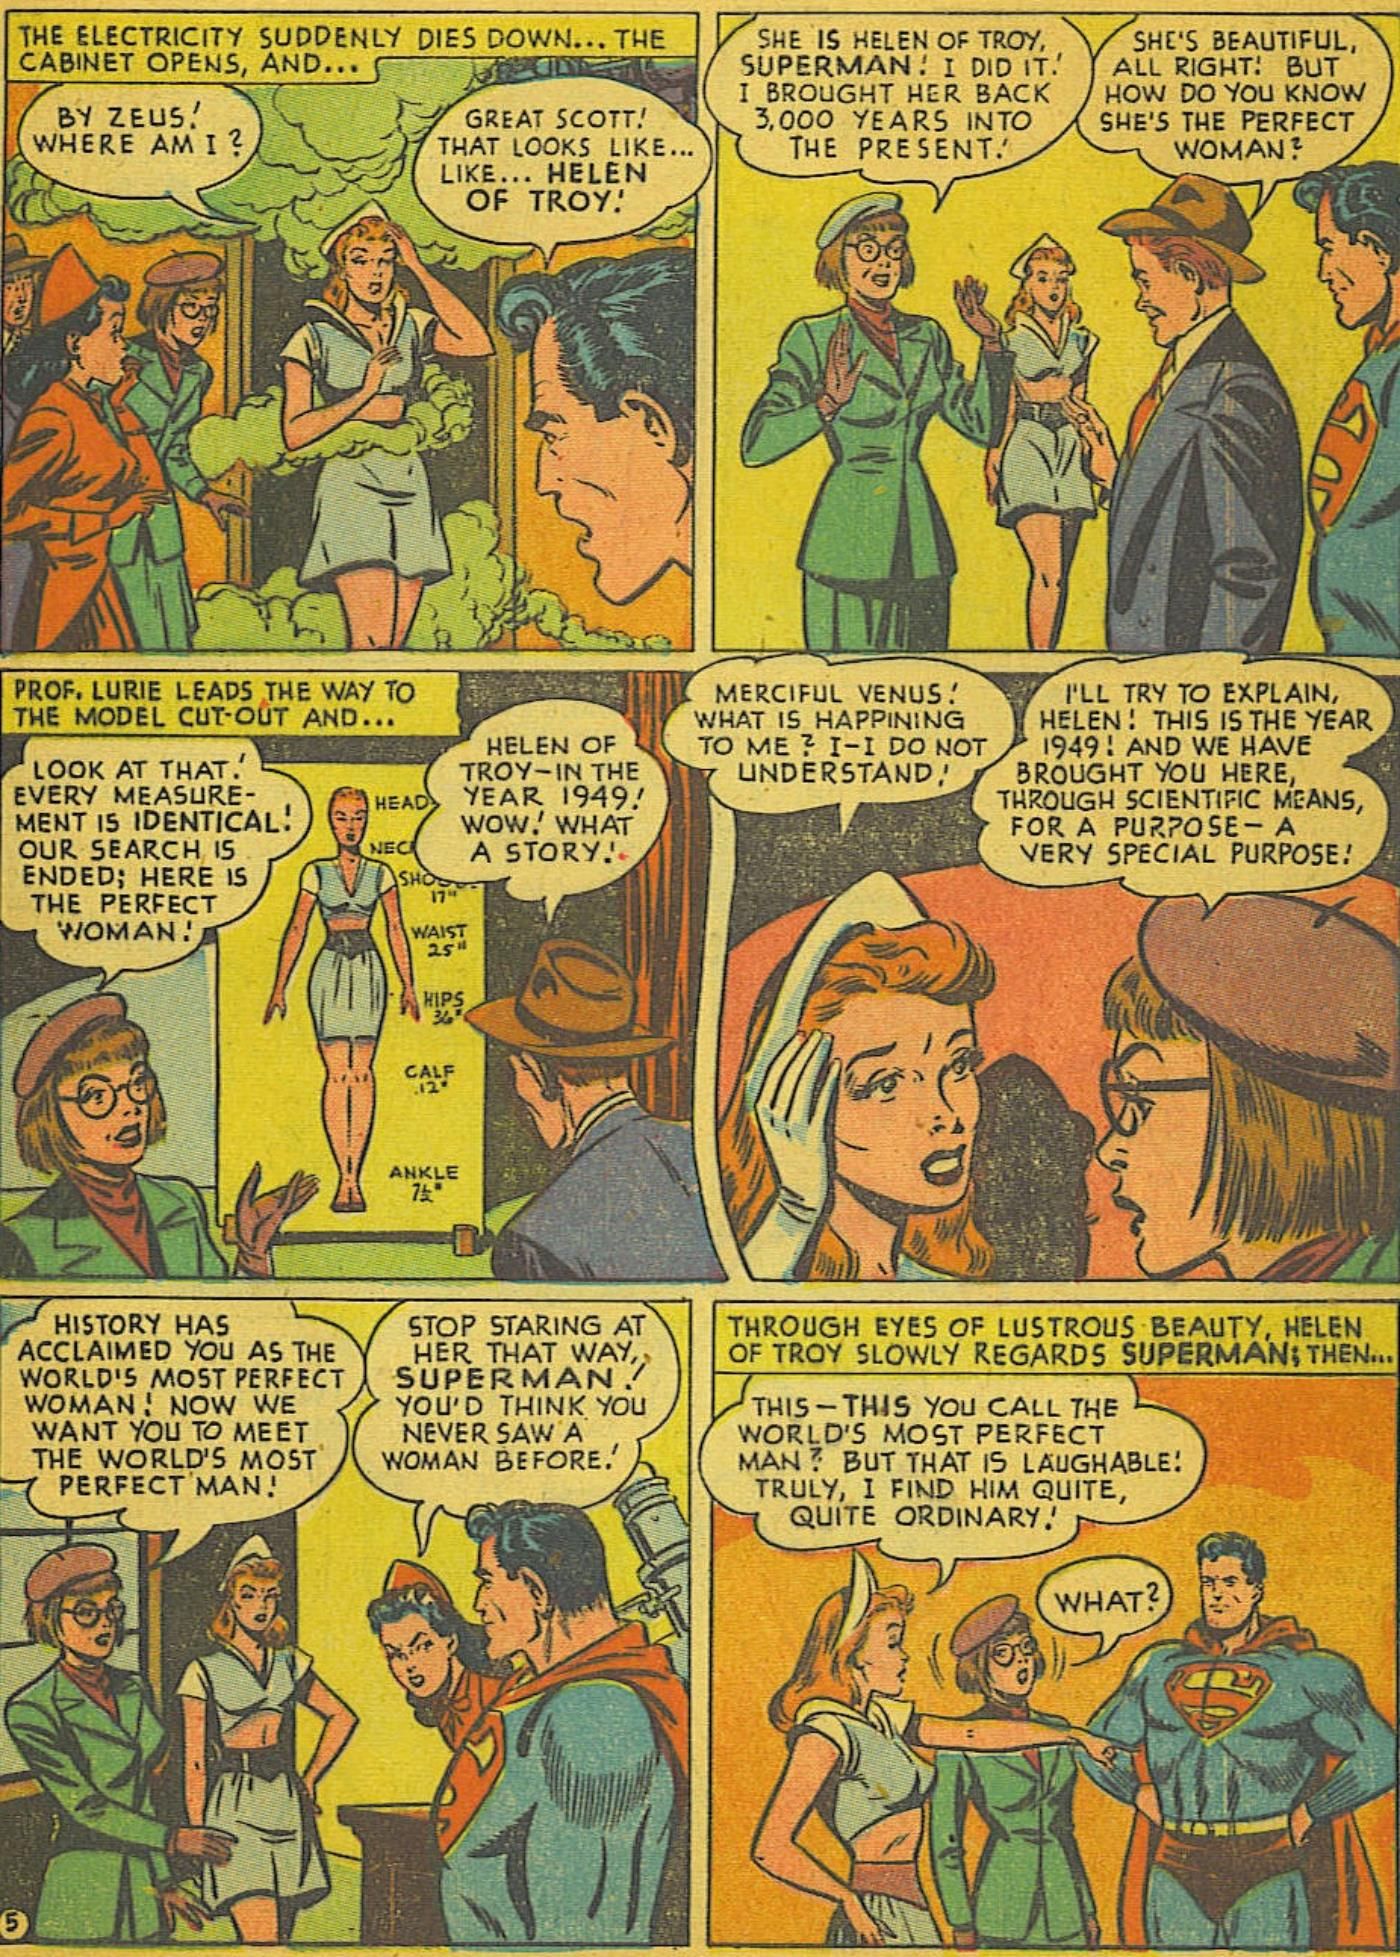 75 лет назад Супермен был в любовном треугольнике с Лоис и... Еленой Троянской.